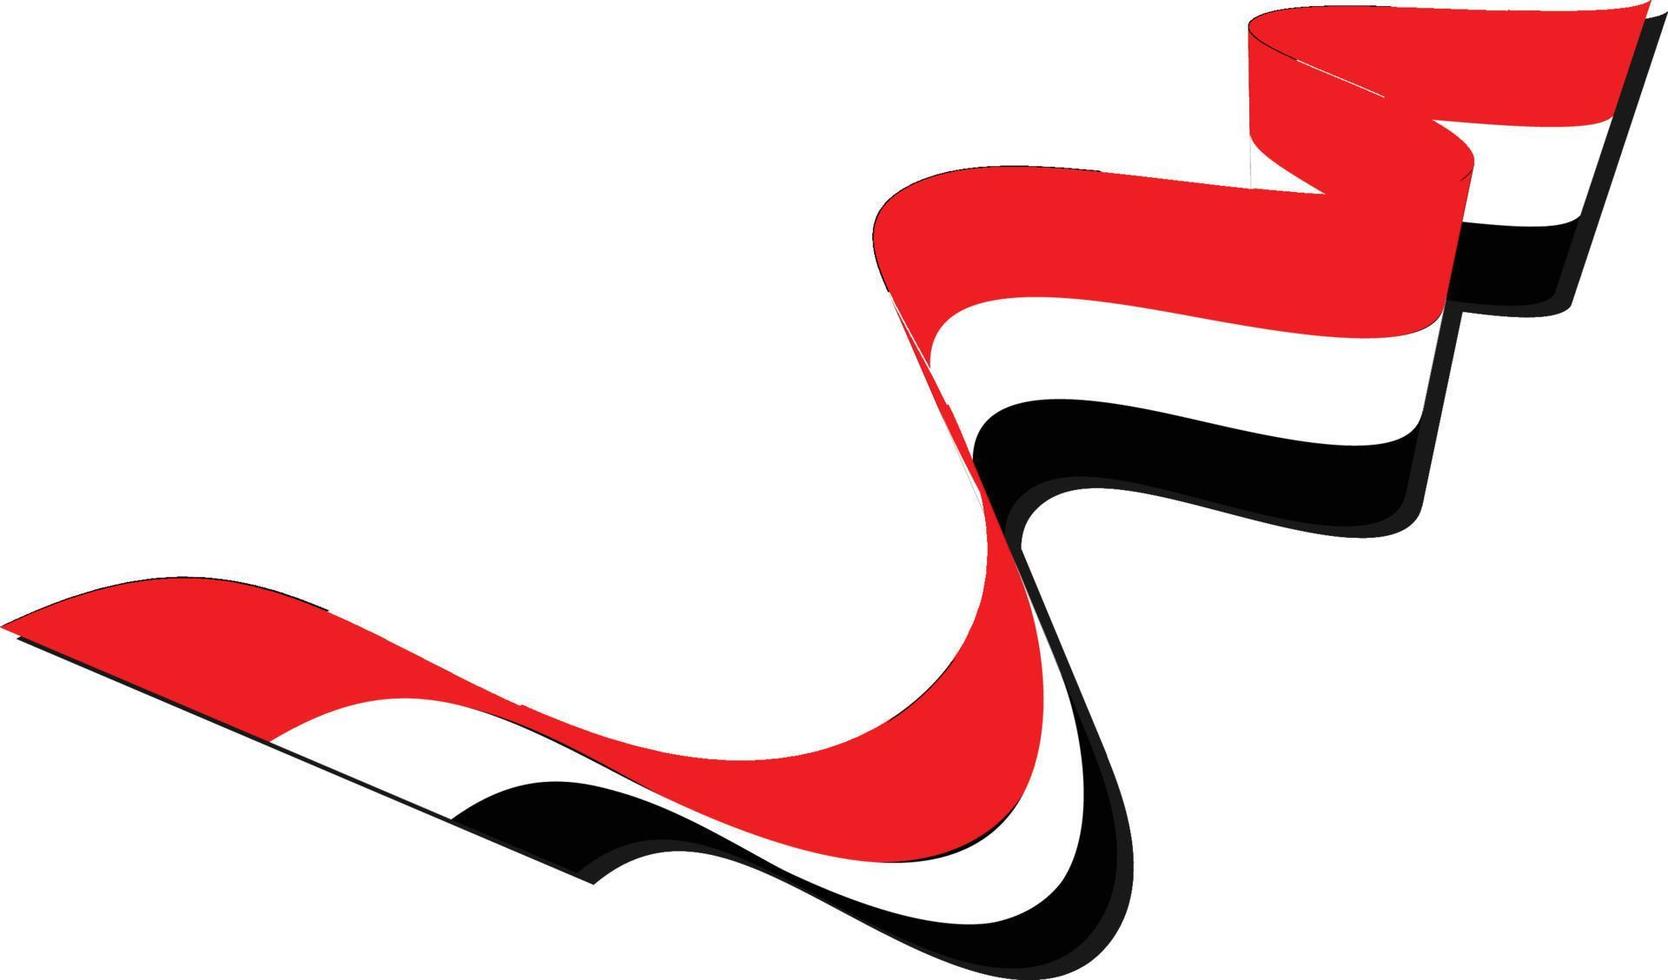 ein gedrehtes band, das die ägyptische flagge in ihren drei farben rot, weiß und schwarz trägt vektor